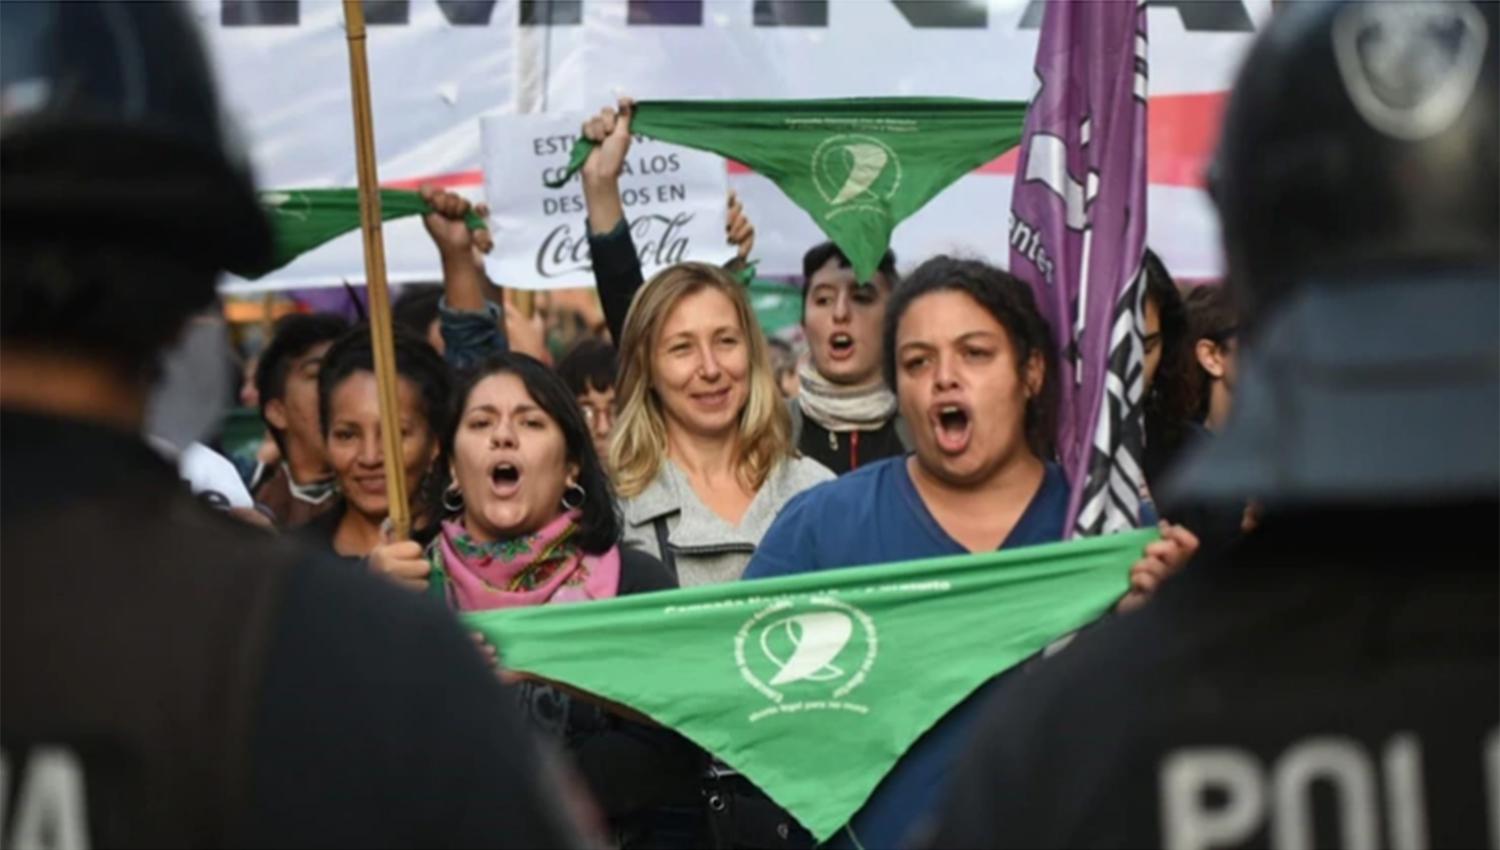 EN BUENOS AIRES. Los pañuelos verdes prevalecen en las marchas.